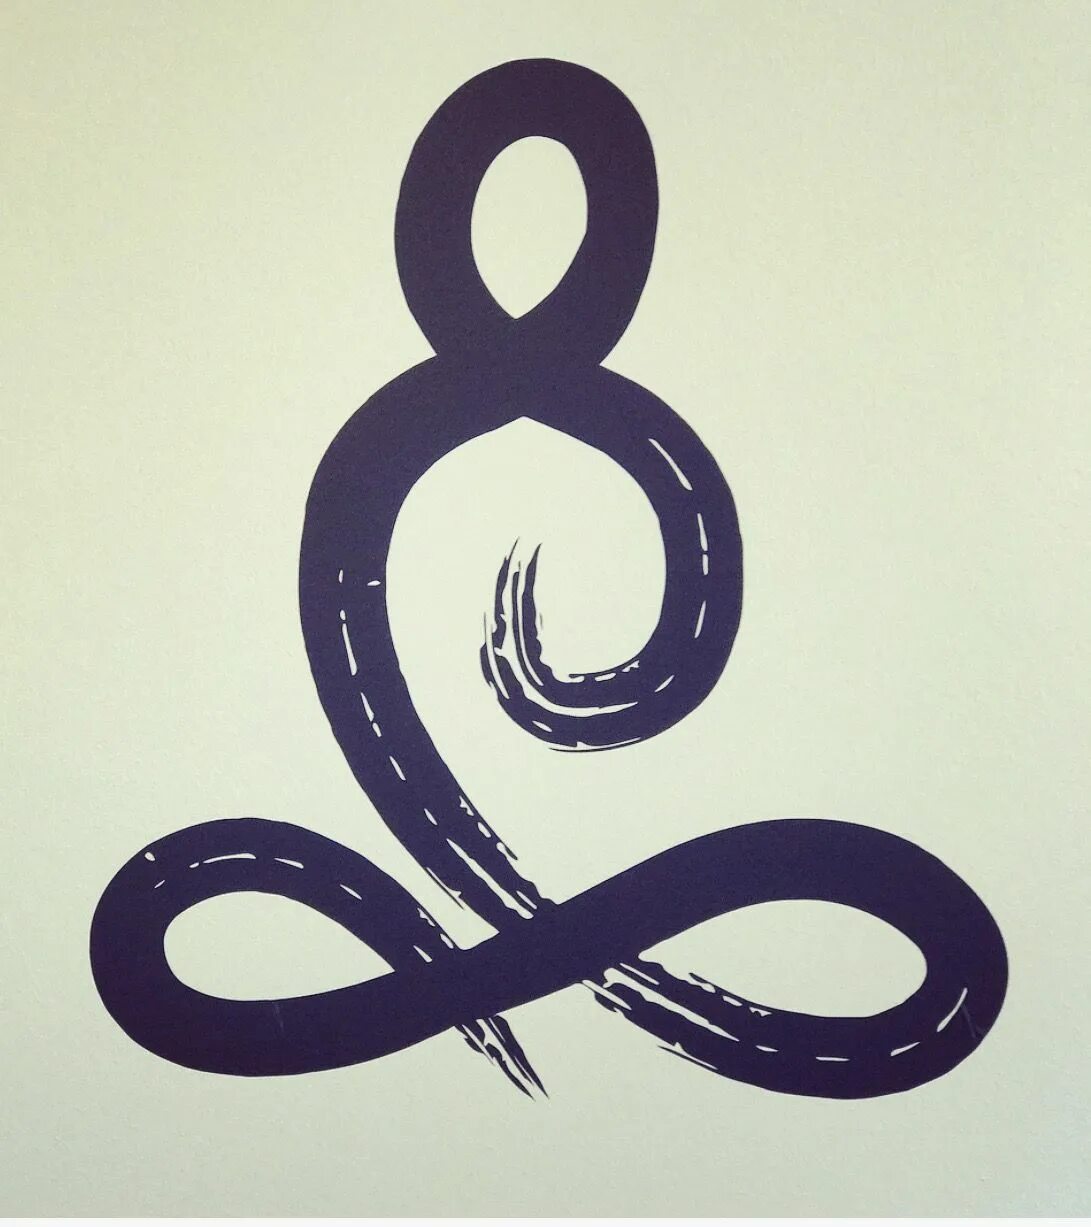 Змея значение символа. Ахирбудхнья змея Кундалини. Кундалини и символ змеи. Змея символ. Кундалини йога змея.